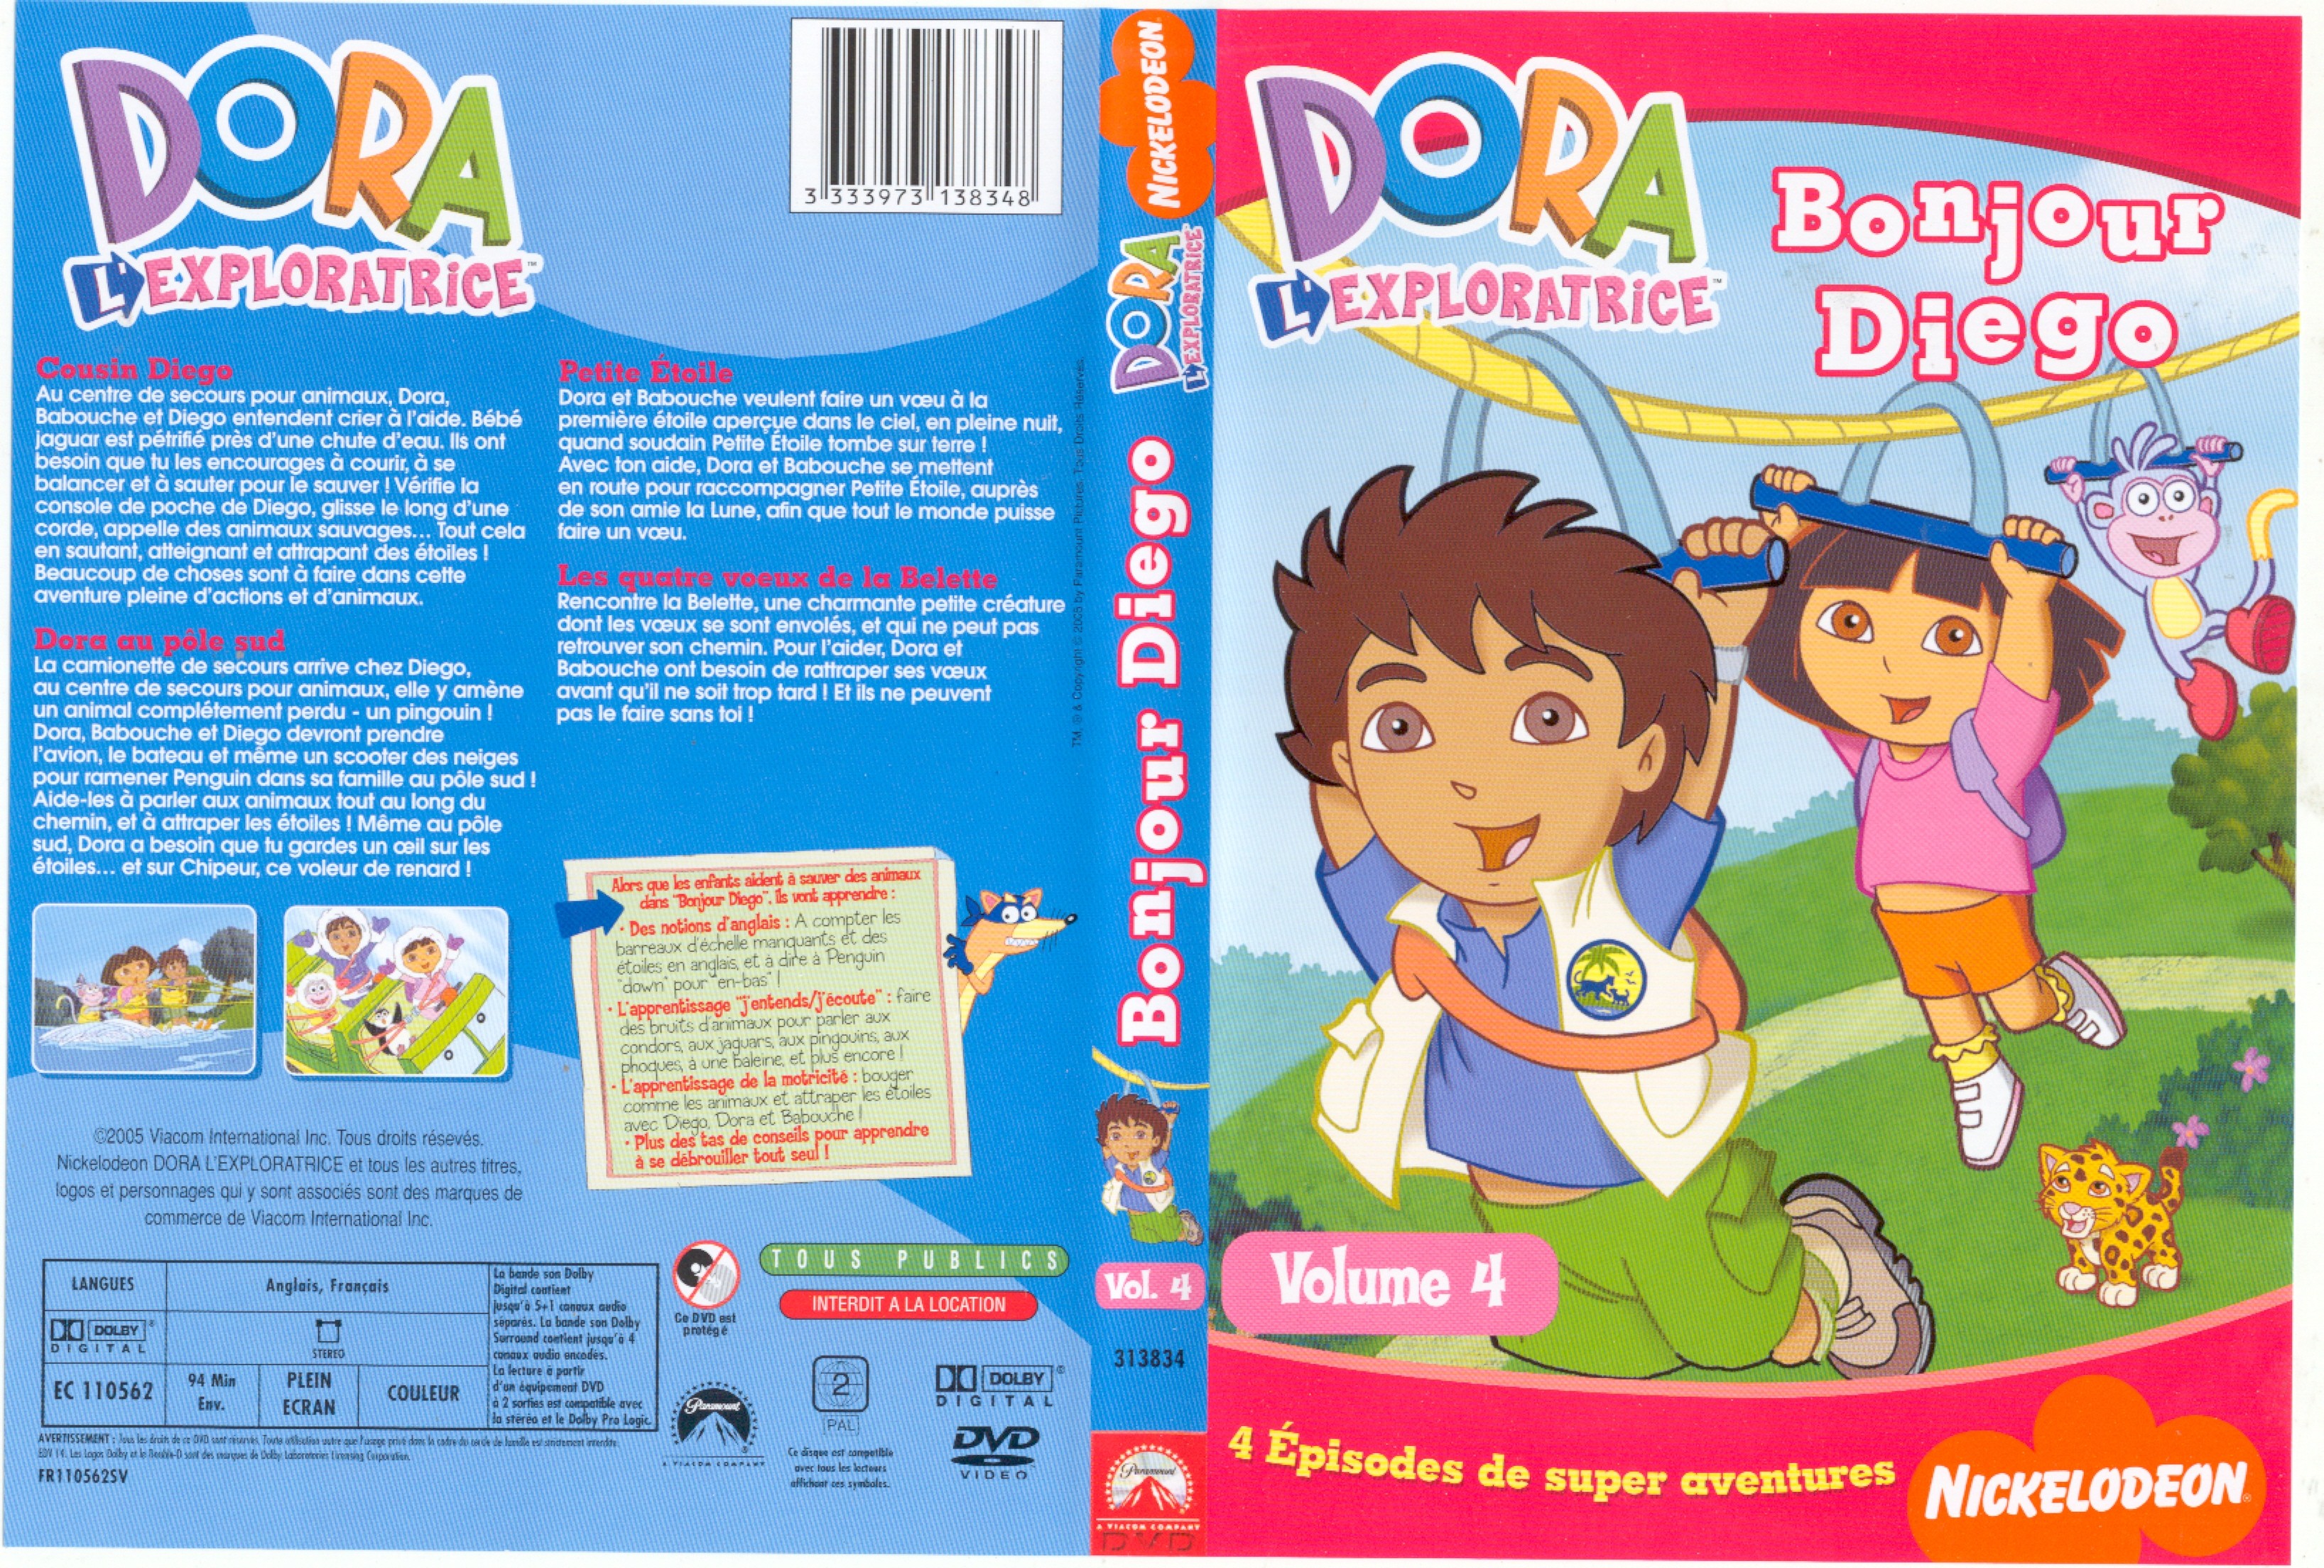 Jaquette DVD de Dora l'exploratrice - bonjour Diego - Cinéma